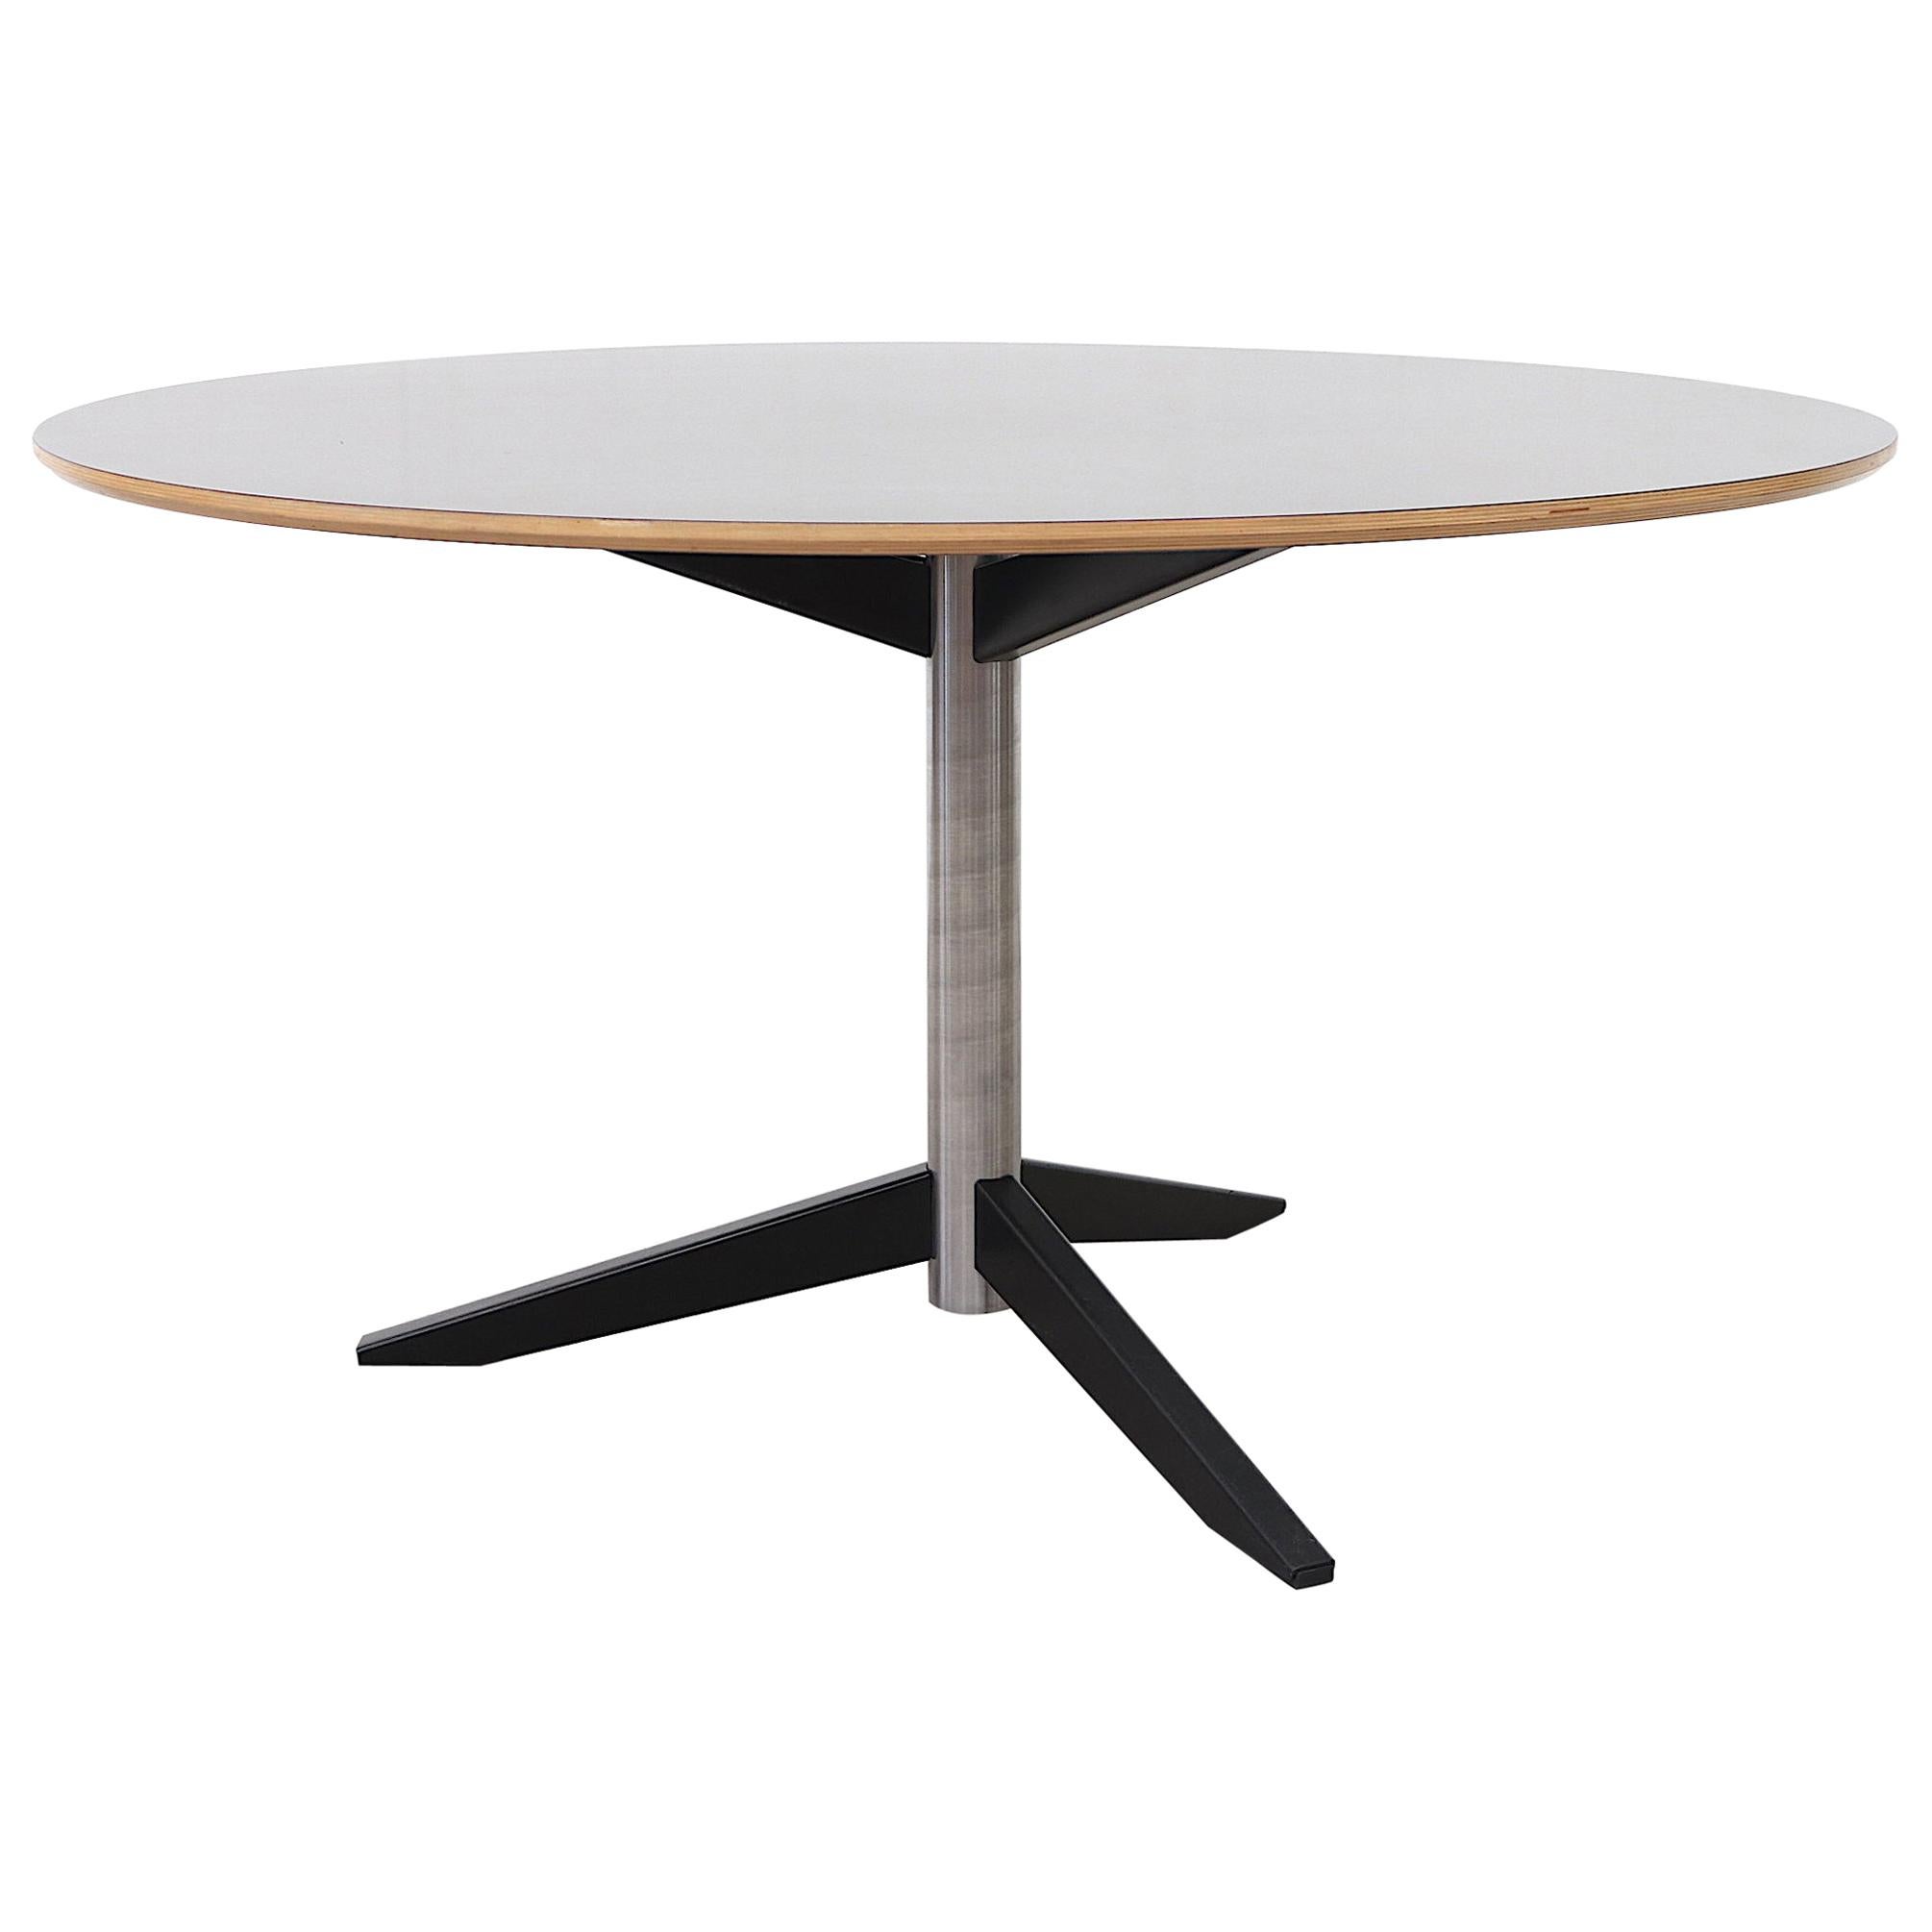 Model TE06 Dining Table by Martin Visser for 't Spectrum